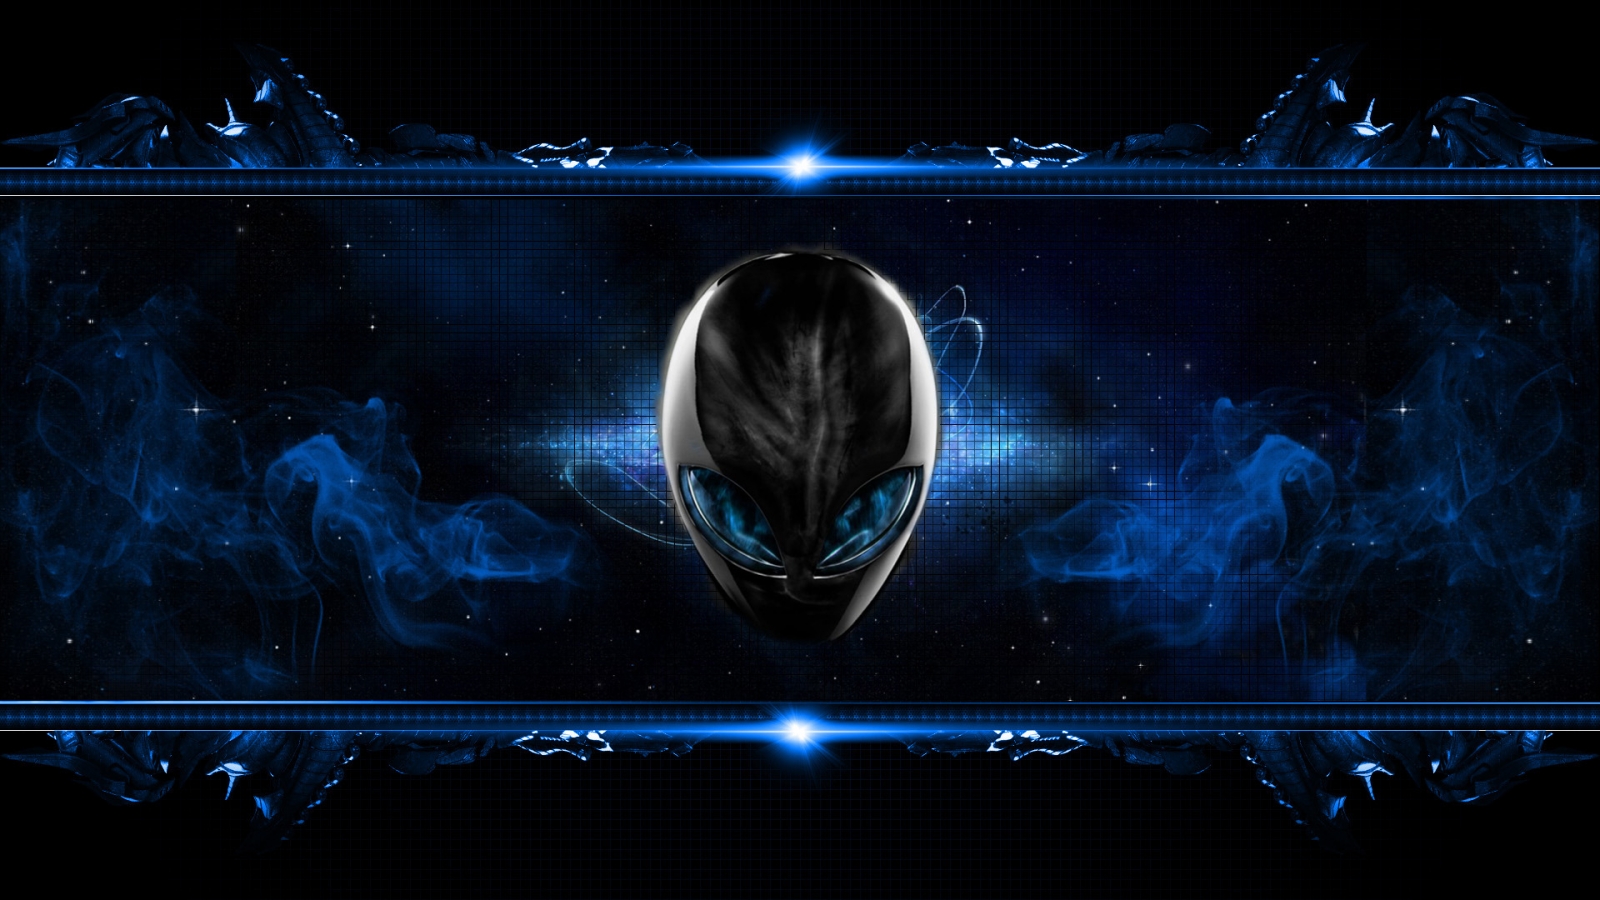 Blue Alien for 1600 x 900 HDTV resolution